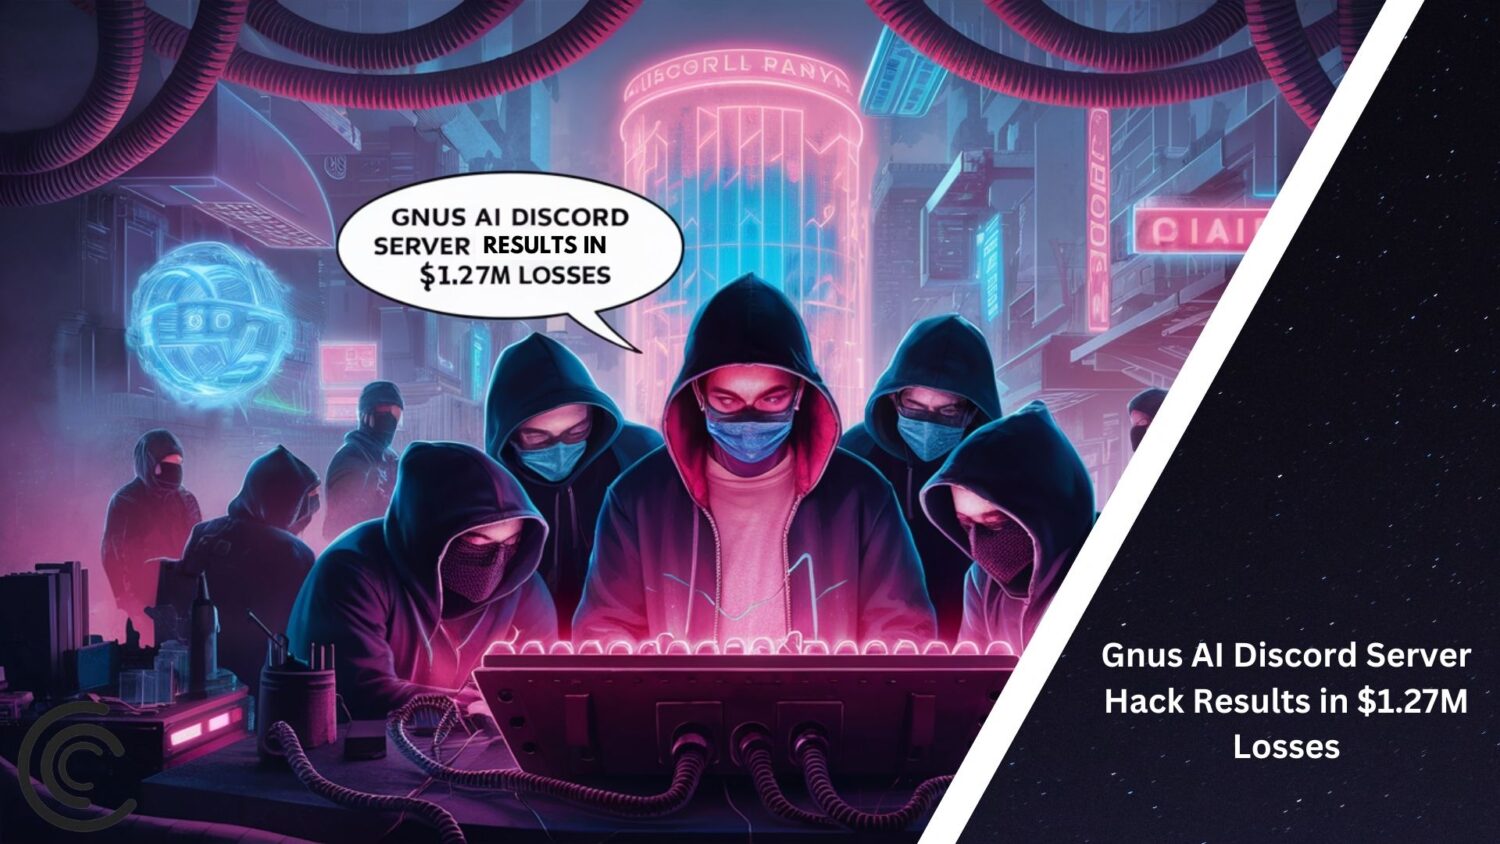 Gnus Ai Discord Server Hack Results In $1.27M Losses